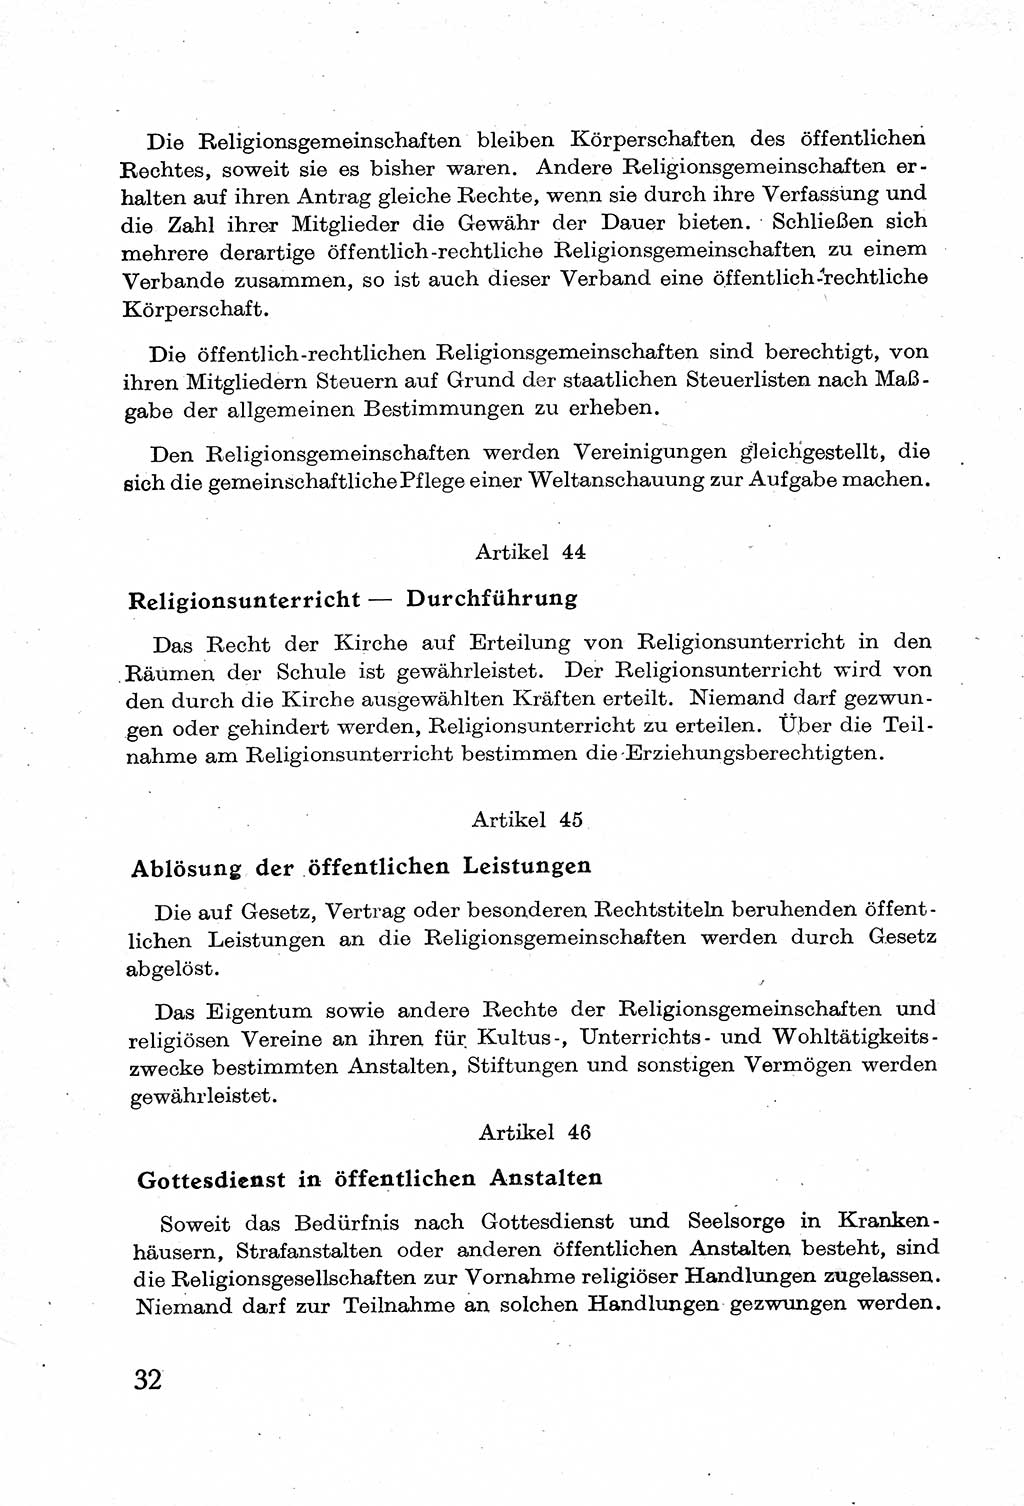 Verfassung der Deutschen Demokratischen Republik (DDR) mit einer Einleitung von Karl Steinhoff 1949, Seite 32 (Verf. DDR Einl. K. S. 1949, S. 32)